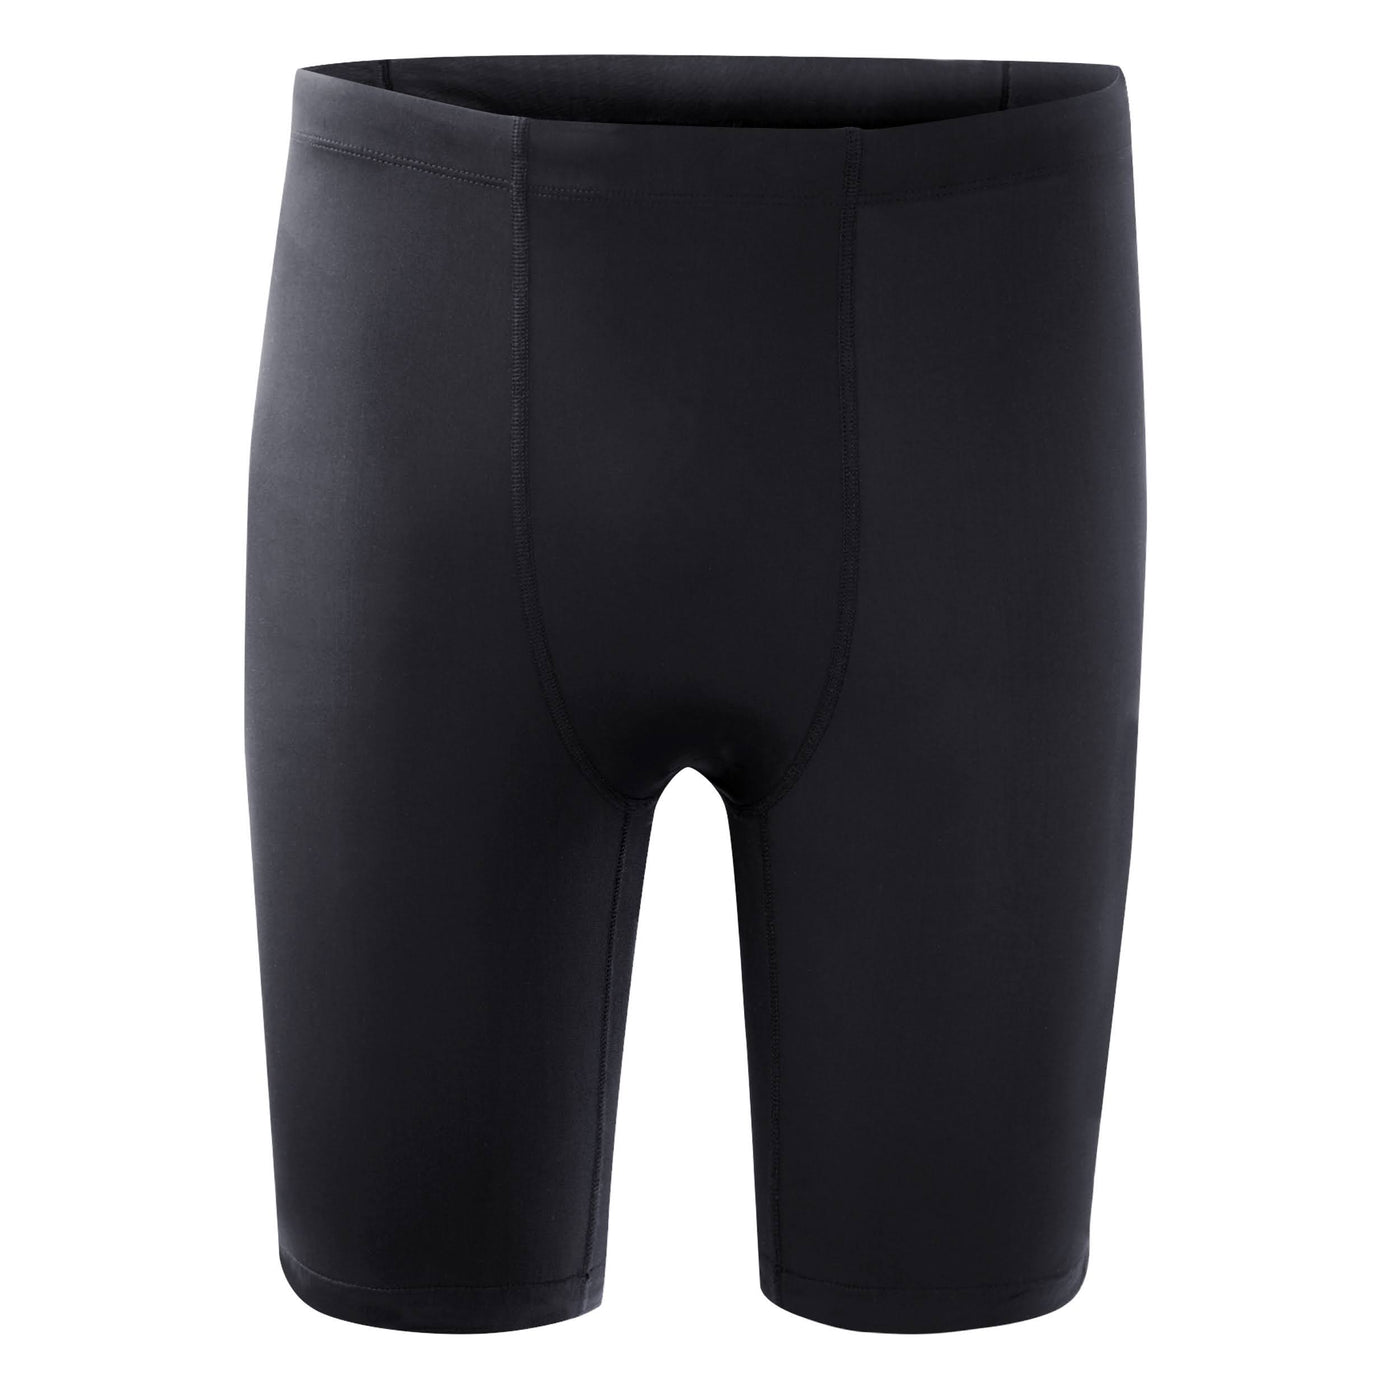 MudGear Men's Elite-Fit Compression Shorts